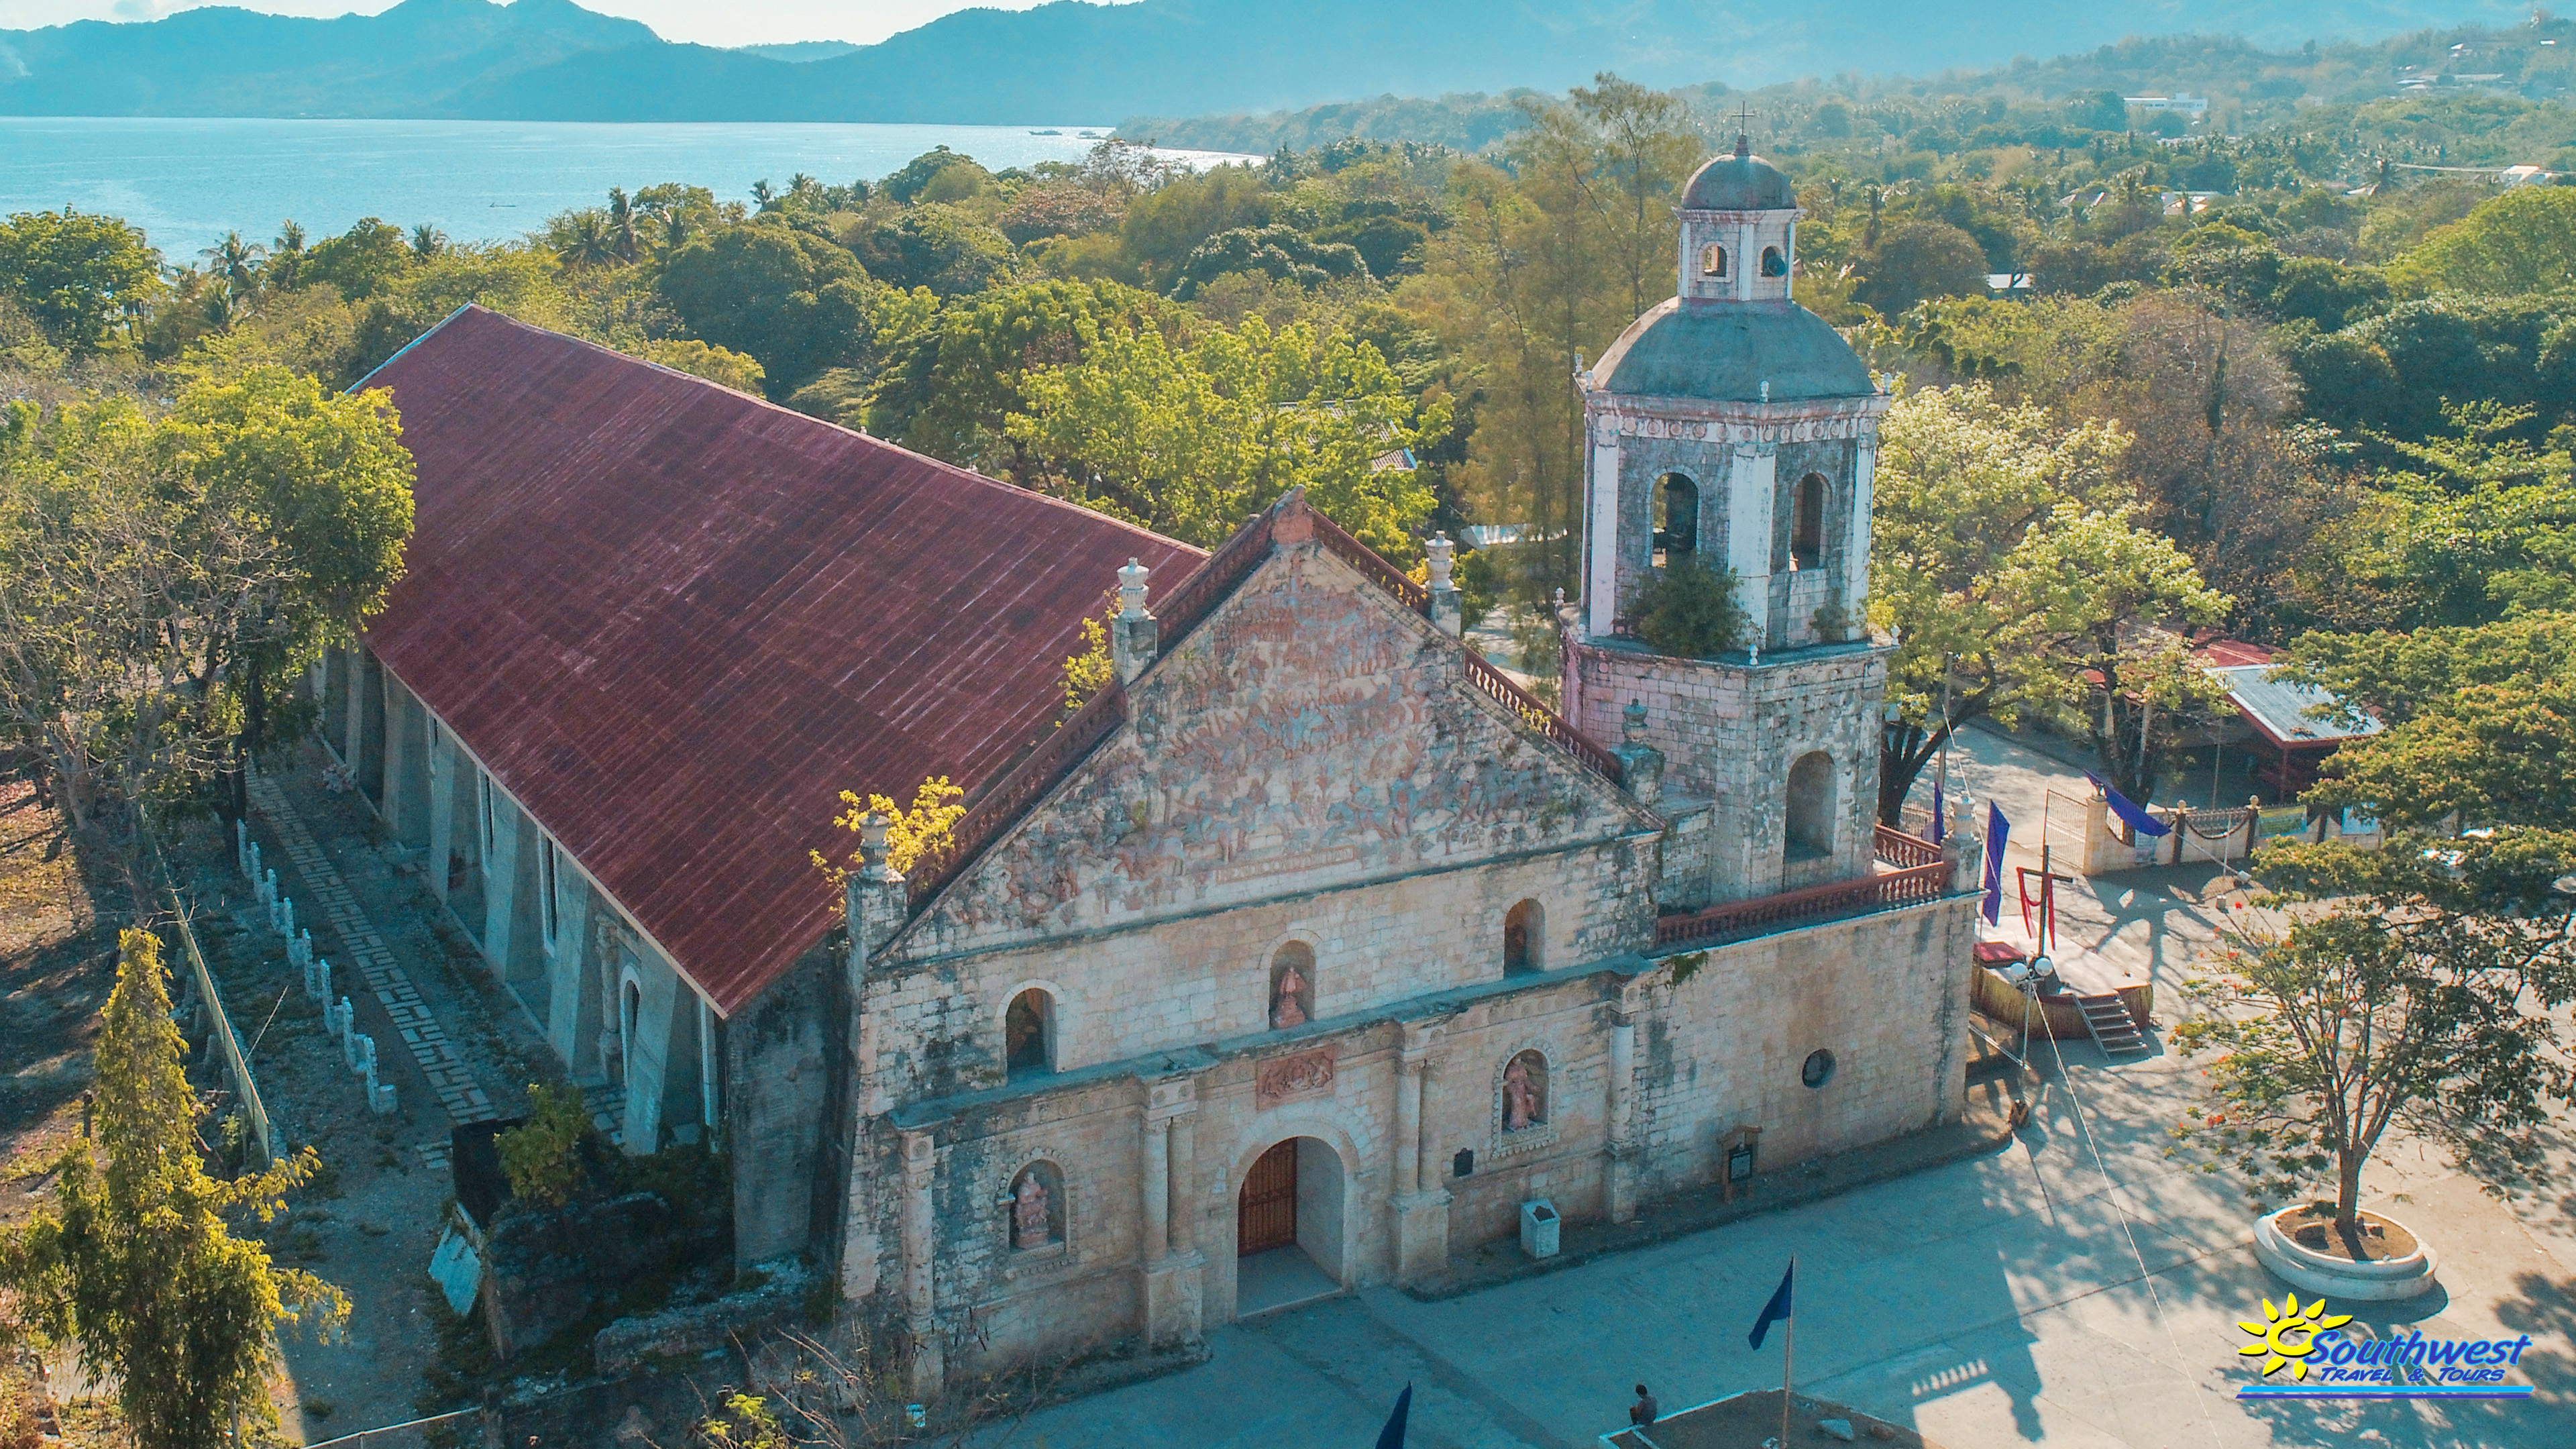 San Joaquin church in Iloilo